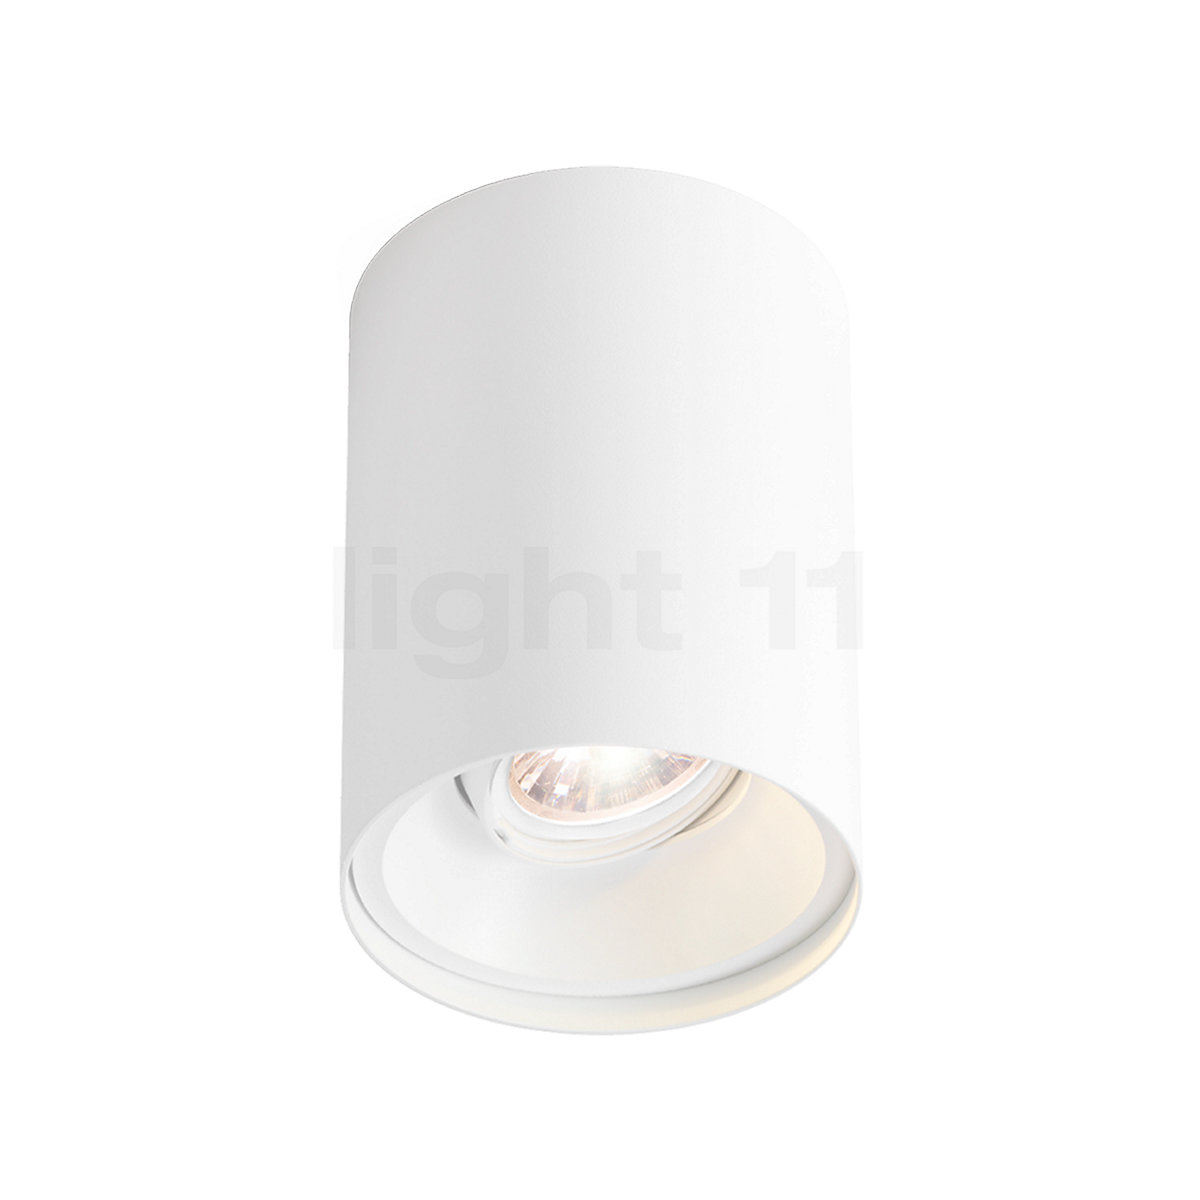 Wever & Solid 1.0 Spot LED på light11.dk